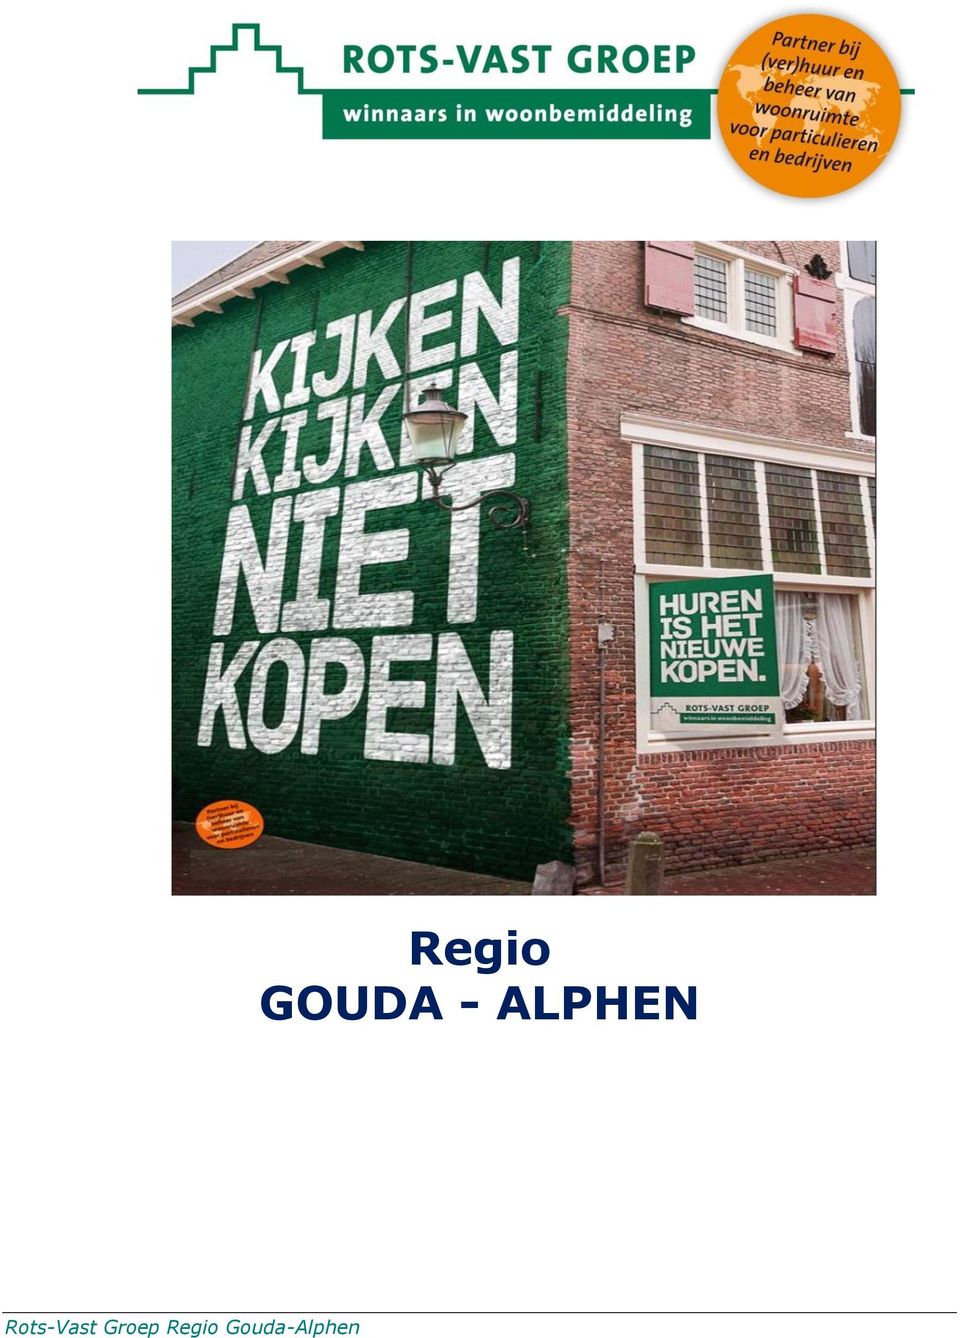 Gouda-Alphen